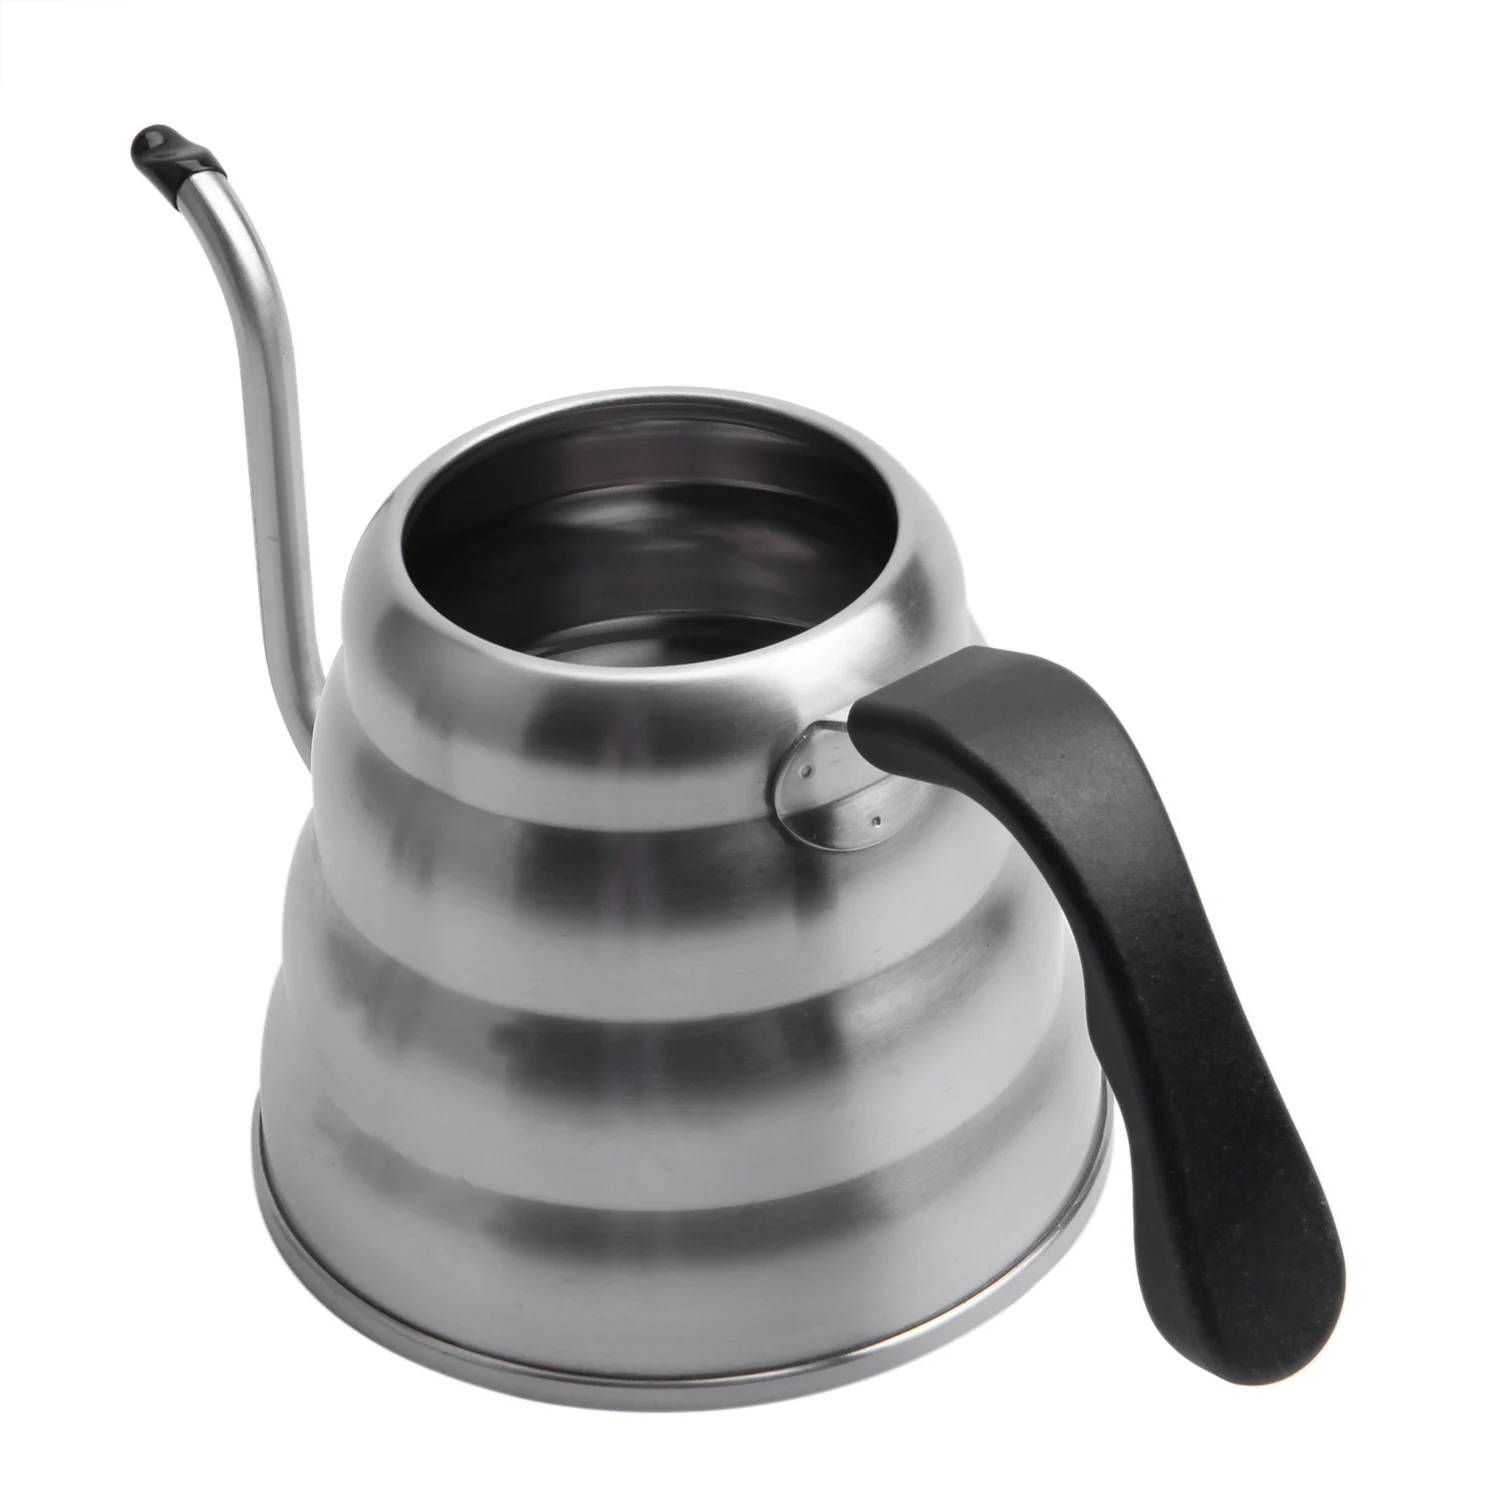 Премиум залейте Кофе чайник с точной температурой 40 floz-Gooseneck чайник-5 чашек чайник из нержавеющей стали для St